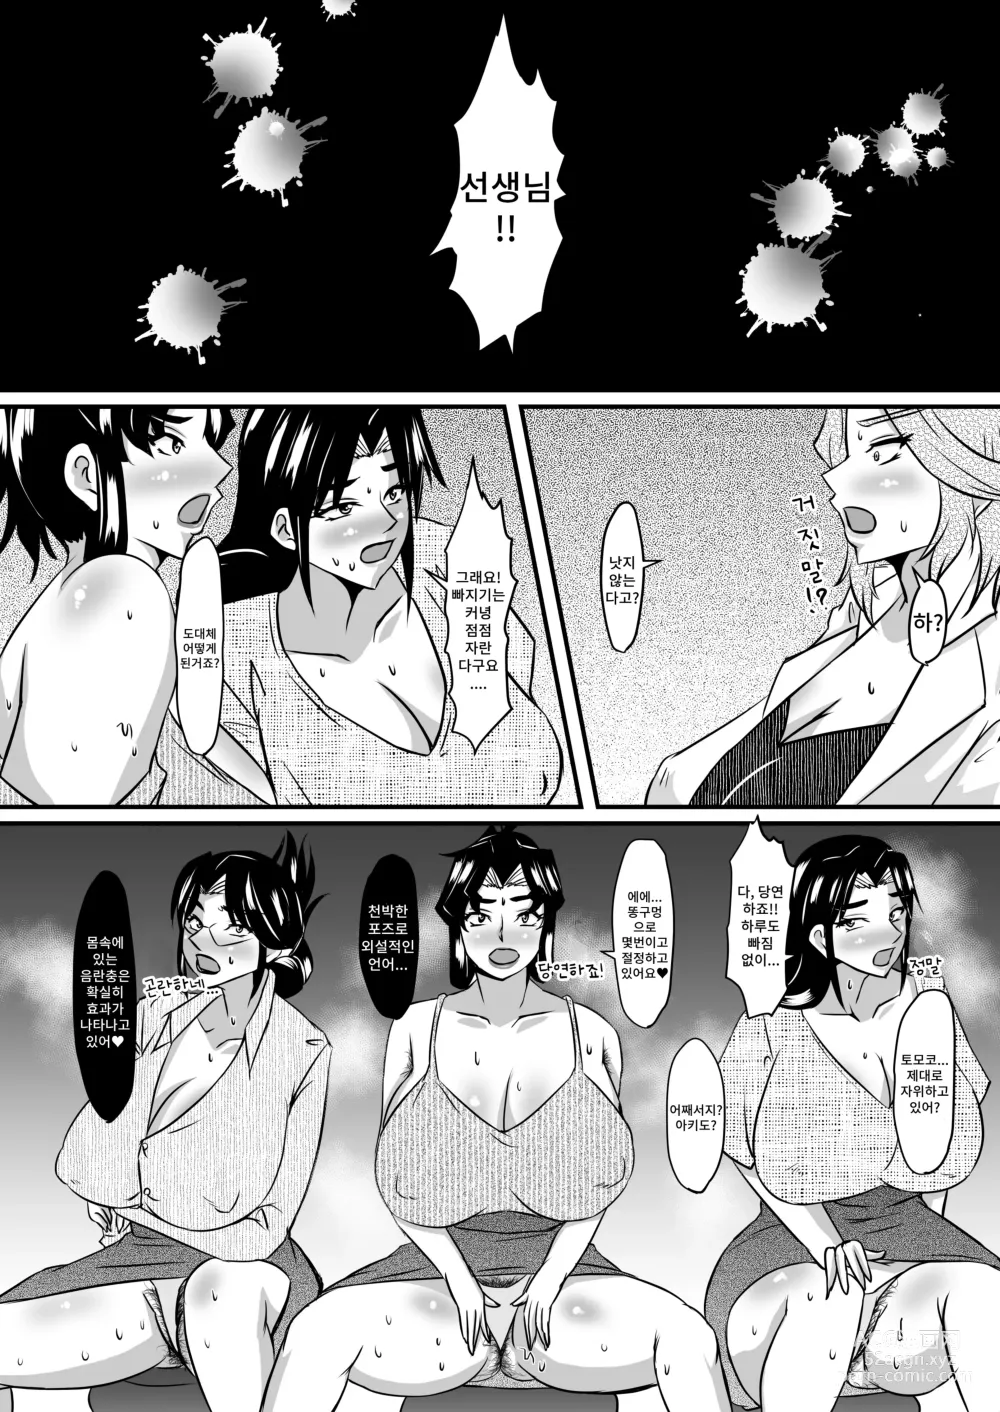 Page 3 of doujinshi 레이카 선생님의 음란충 똥구멍 에스테틱3